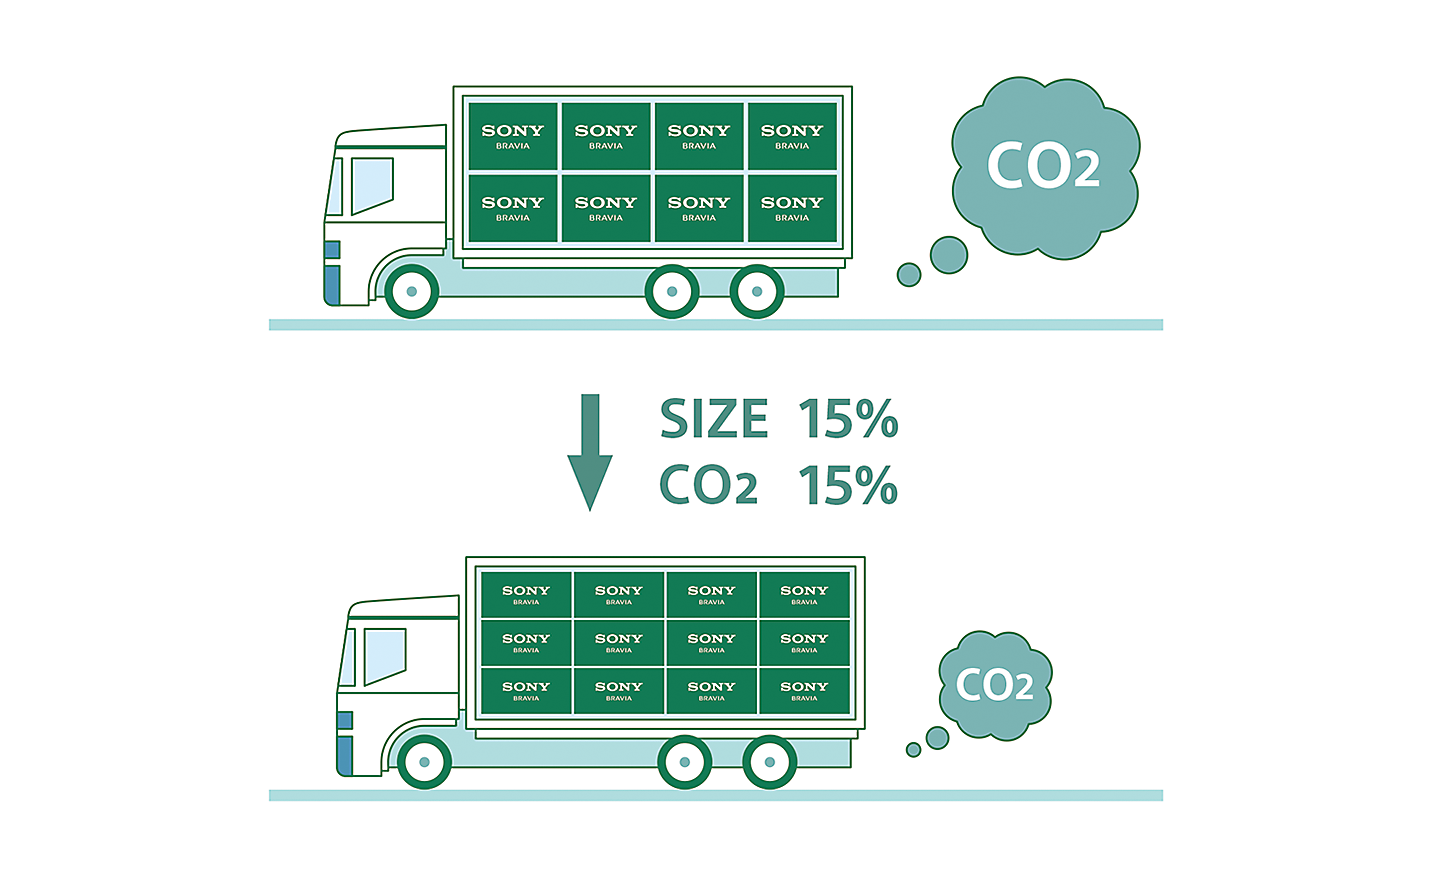 Grafikk av to lastebiler som illustrerer hvordan mindre emballasje bidrar til å kutte CO2-utslipp under transport